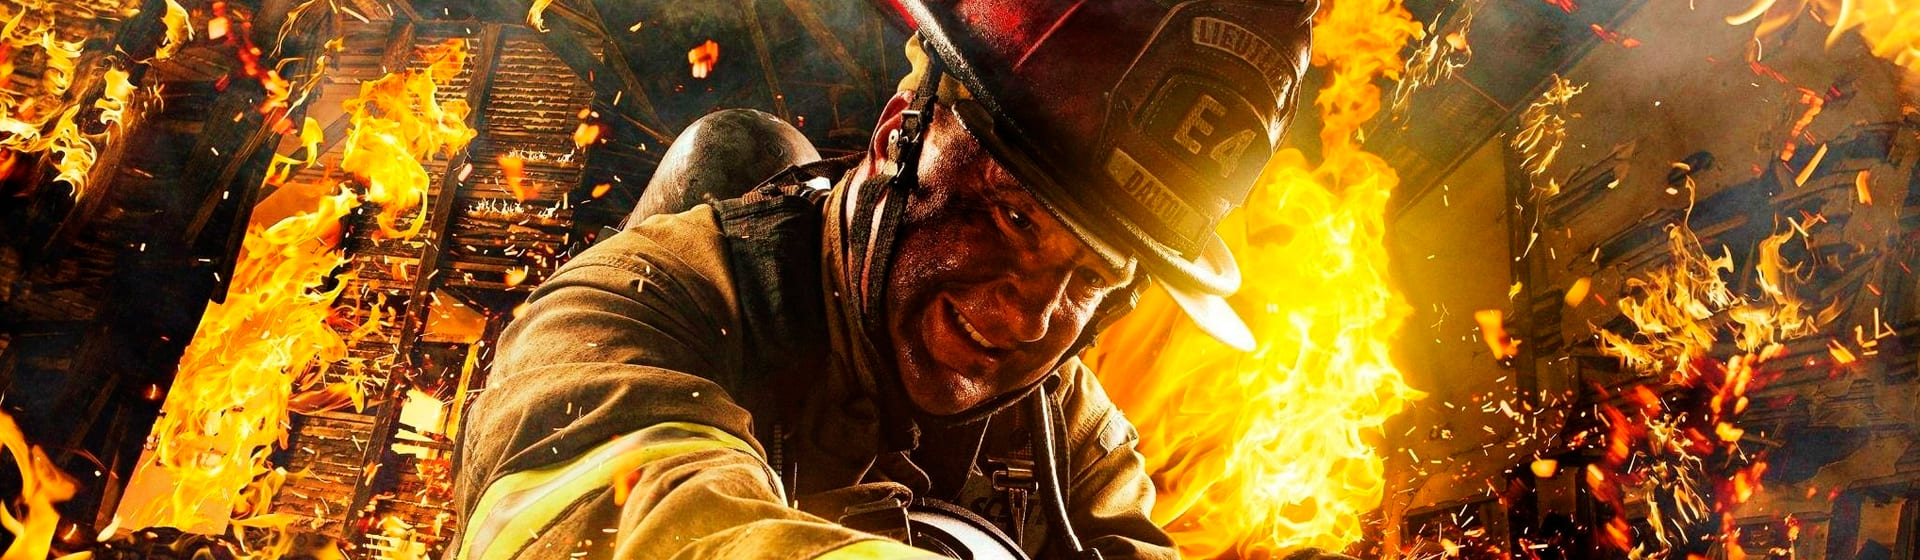 Пожарный - Мерч и одежда с атрибутикой